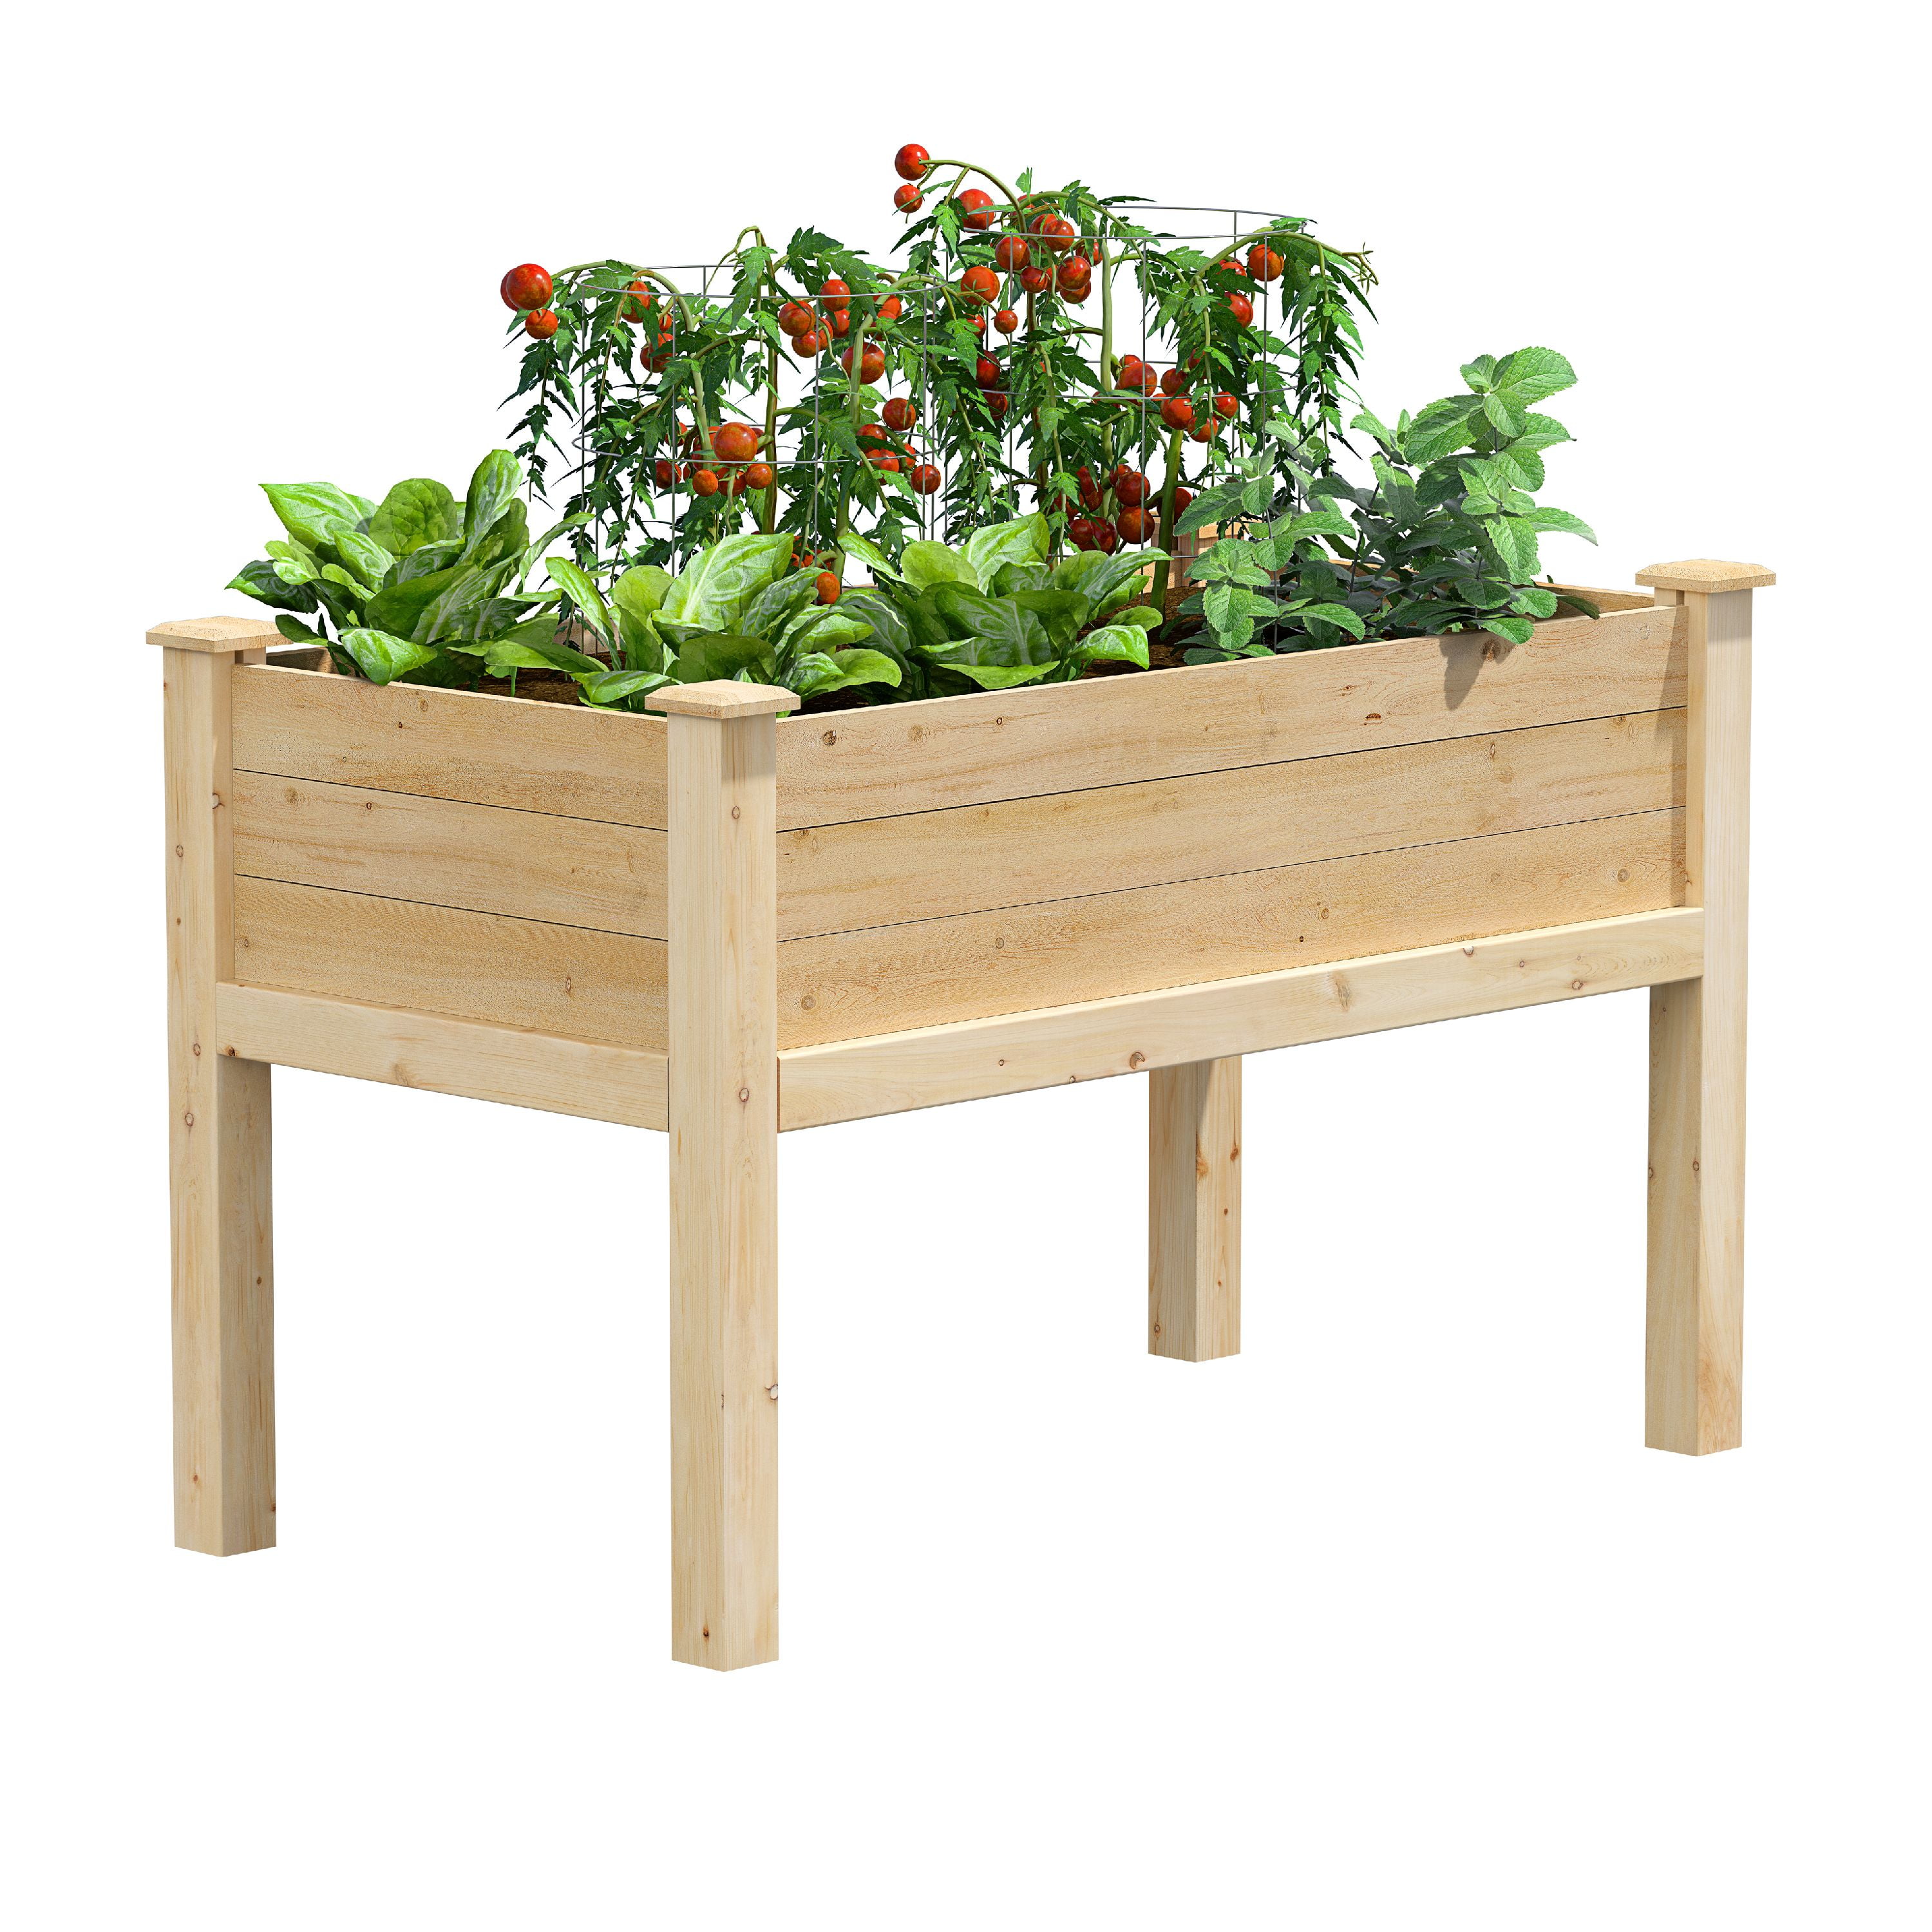 Raised Wooden Garden Bed Flower Bo, Deck Vegetable Garden Kit